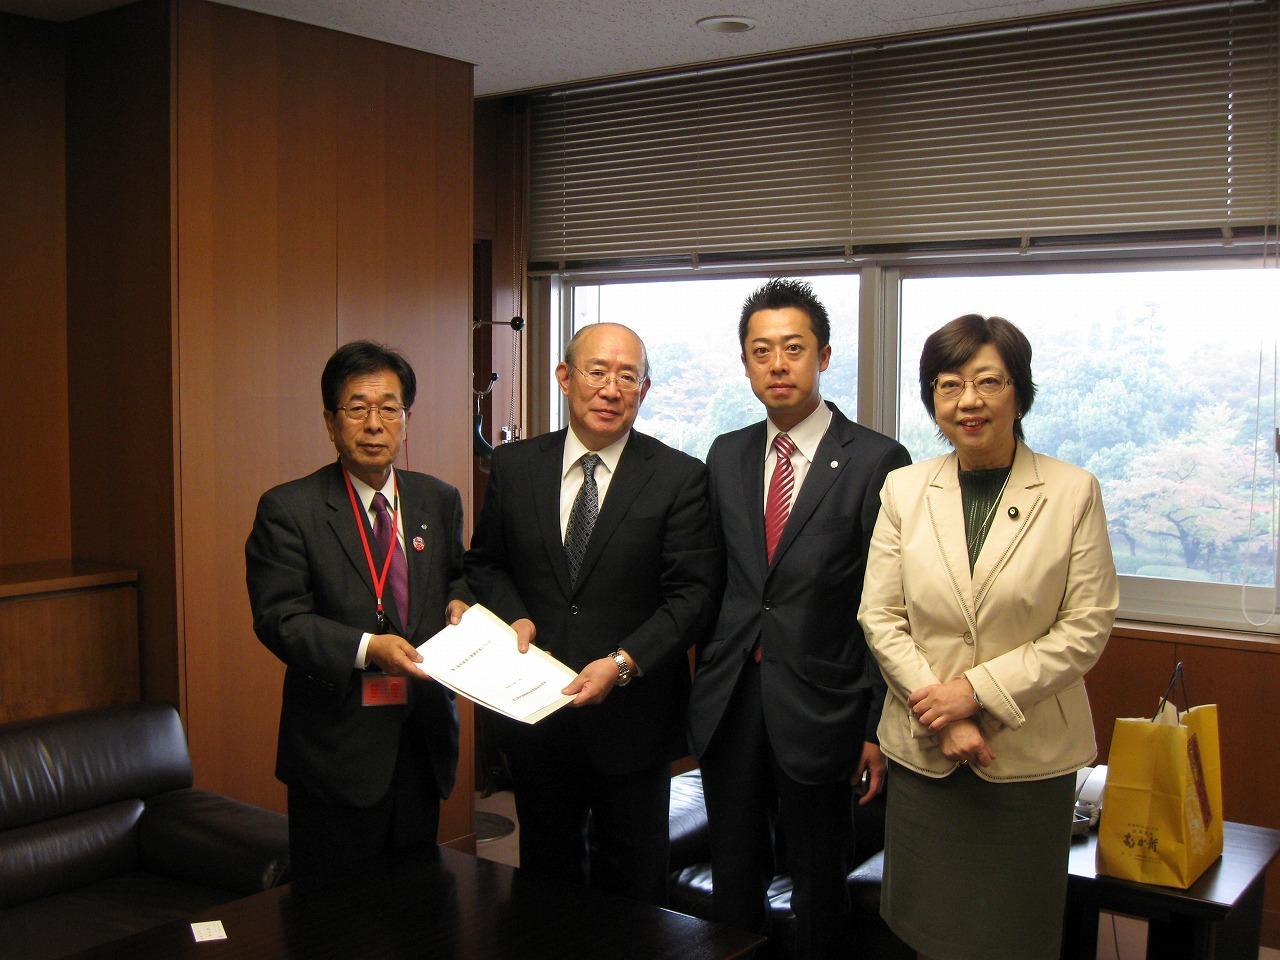 左から、田代町長、増田事務次官、谷川とむ支部長、太田参議院議員